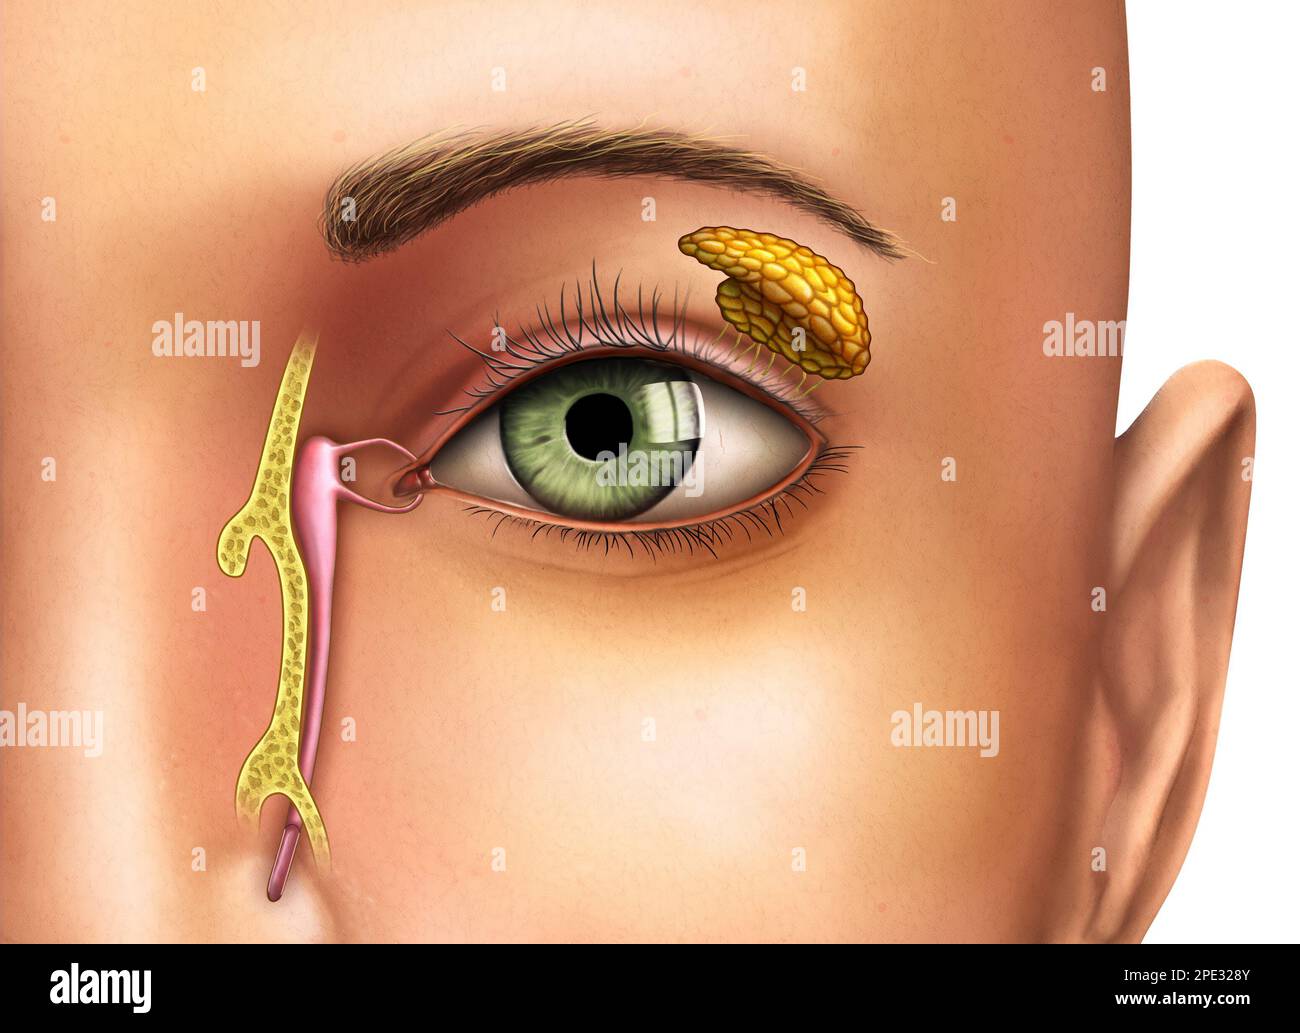 Dessin anatomique montrant le fonctionnement des glandes lacrymales. Illustration numérique. Banque D'Images